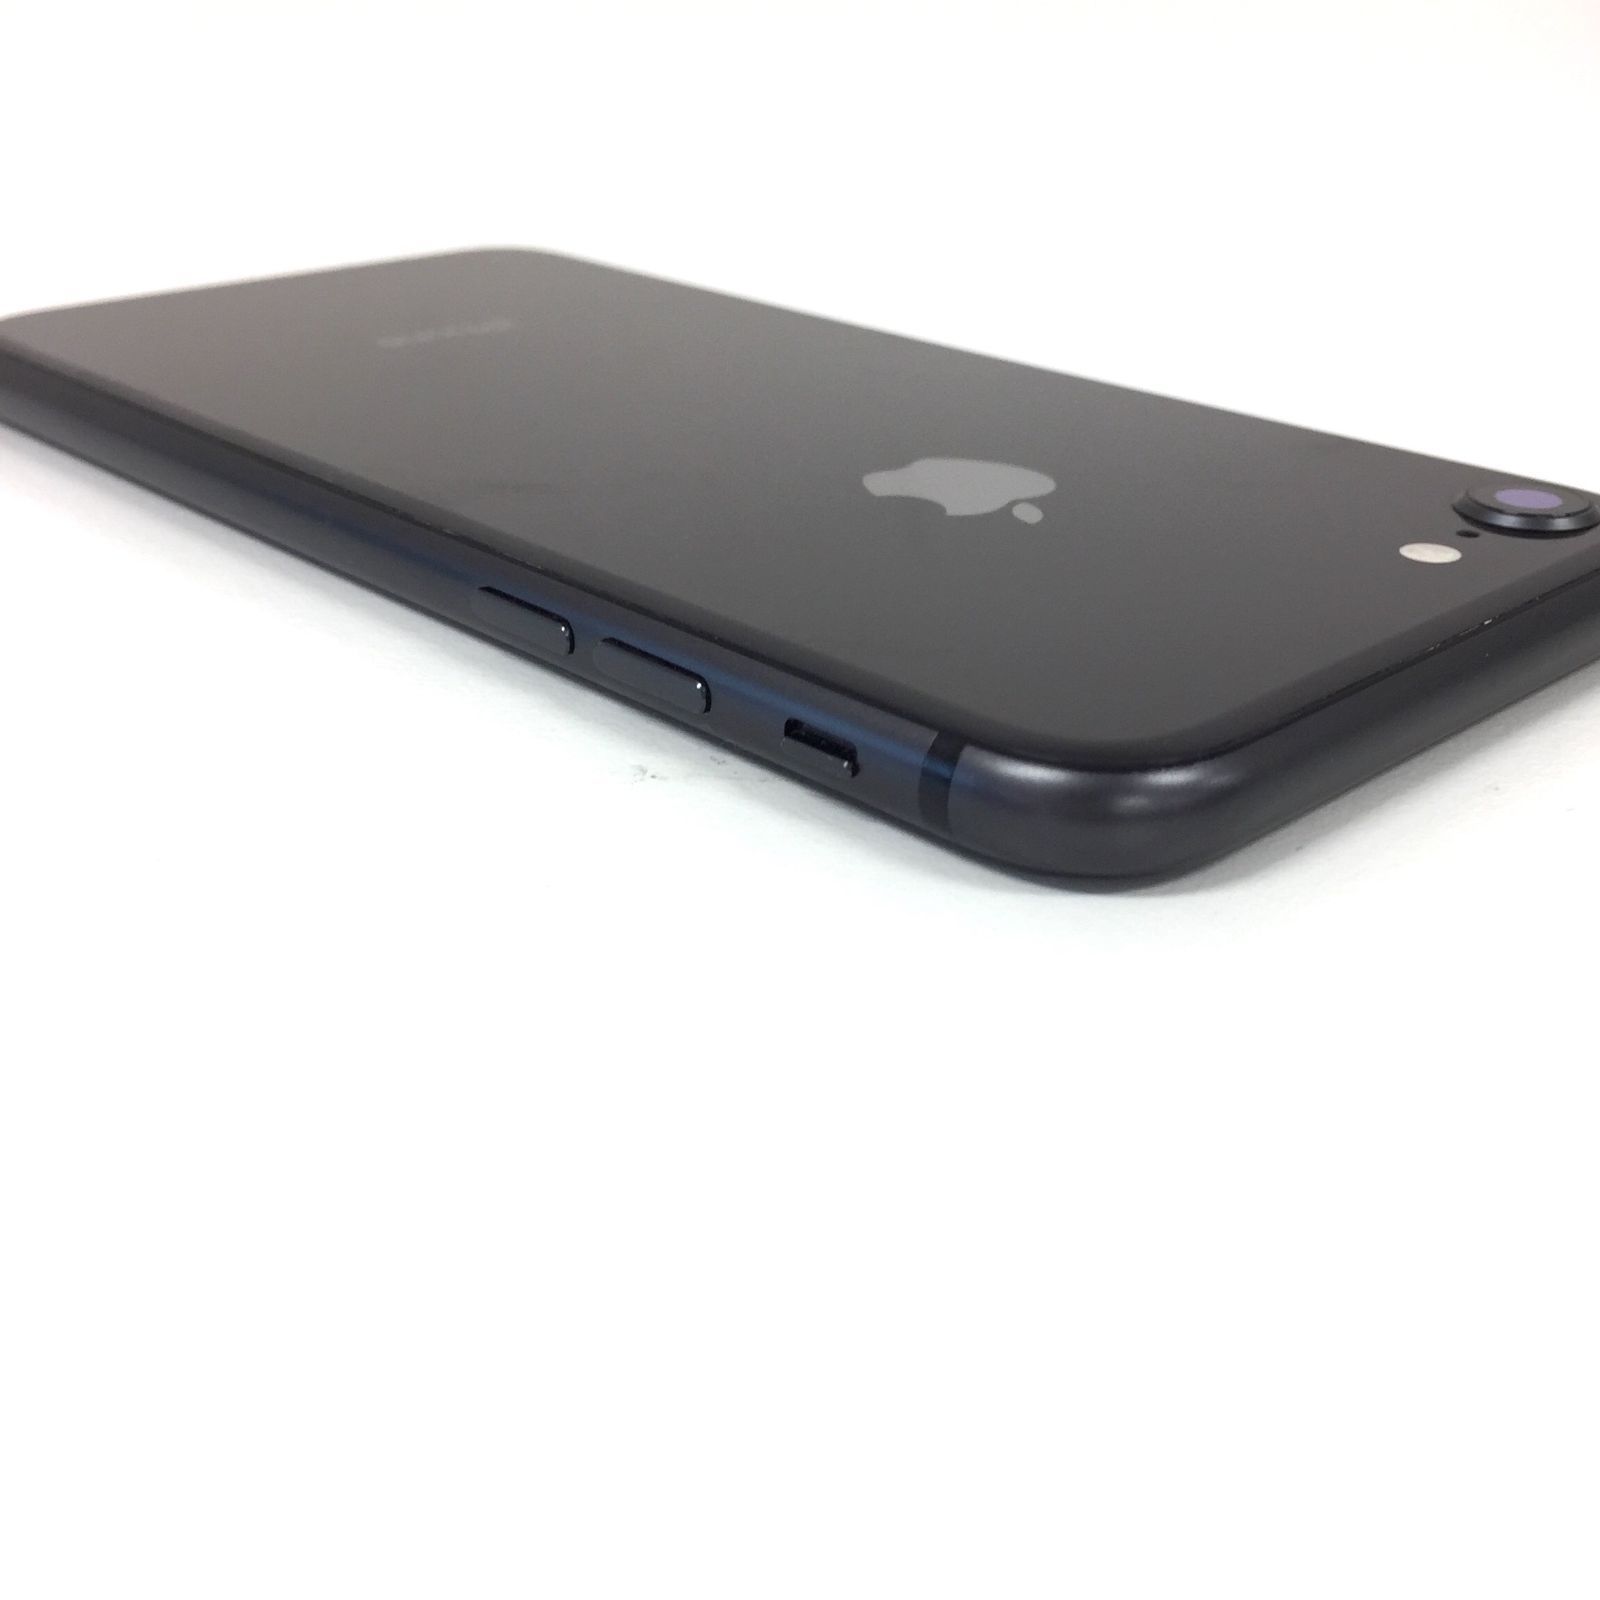 θ【SIMロック解除済み】iPhone 8 64GB スペースグレイ - メルカリ